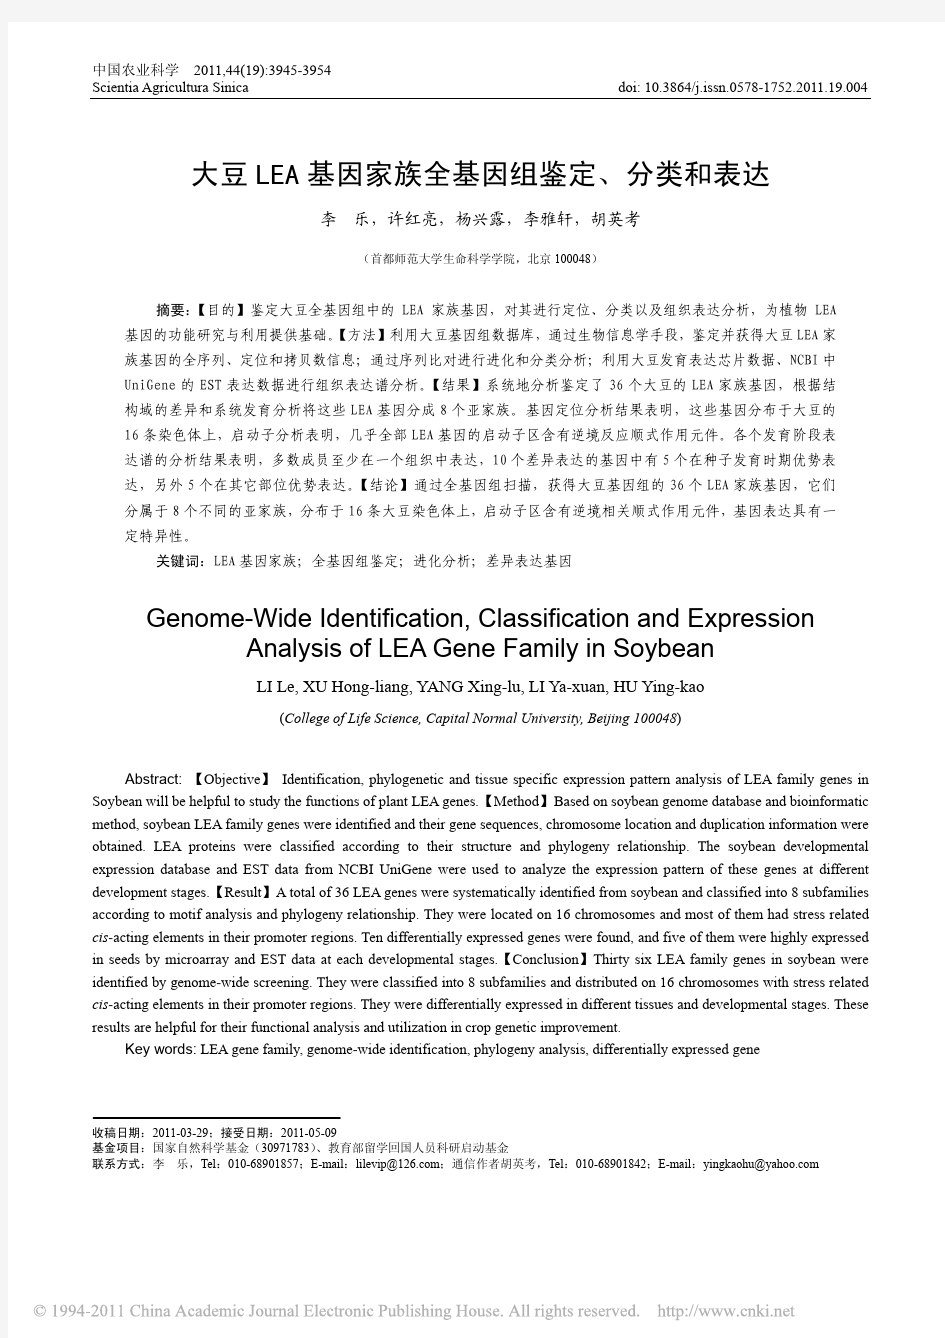 大豆LEA基因家族全基因组鉴定_分类和表达